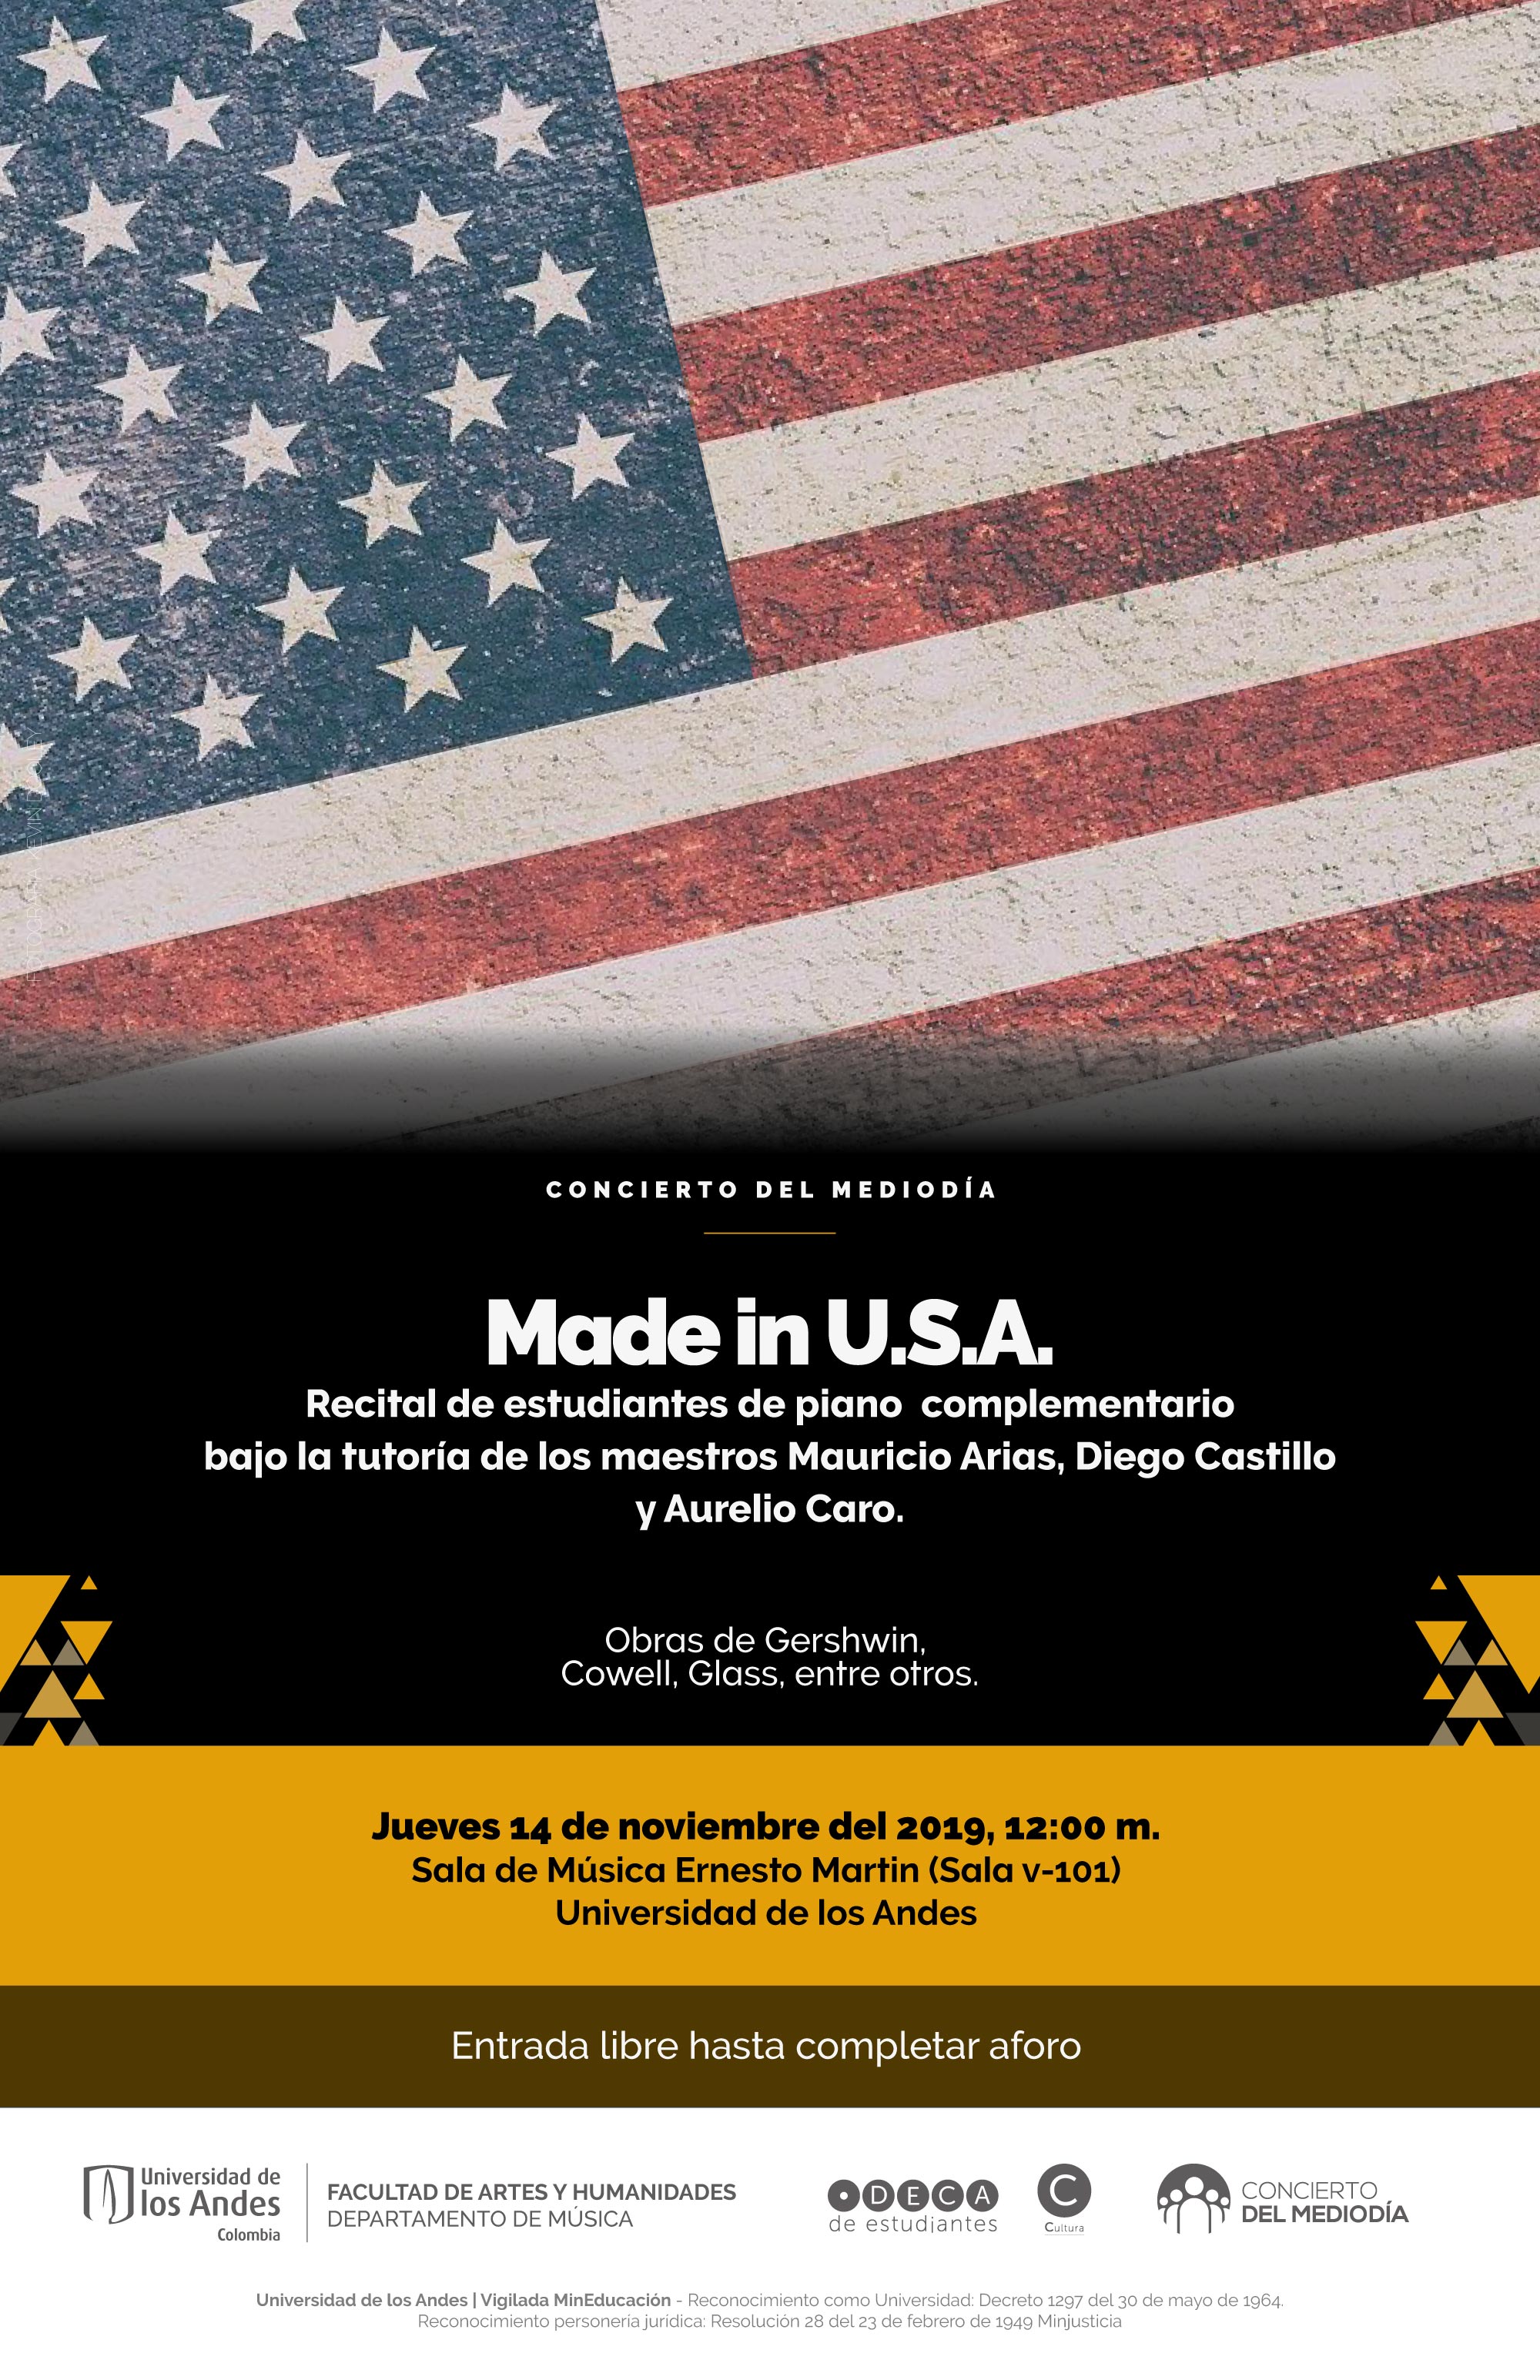 Concierto del Mediodía: Made in U.S.A. – Recital de estudiantes de piano complementario